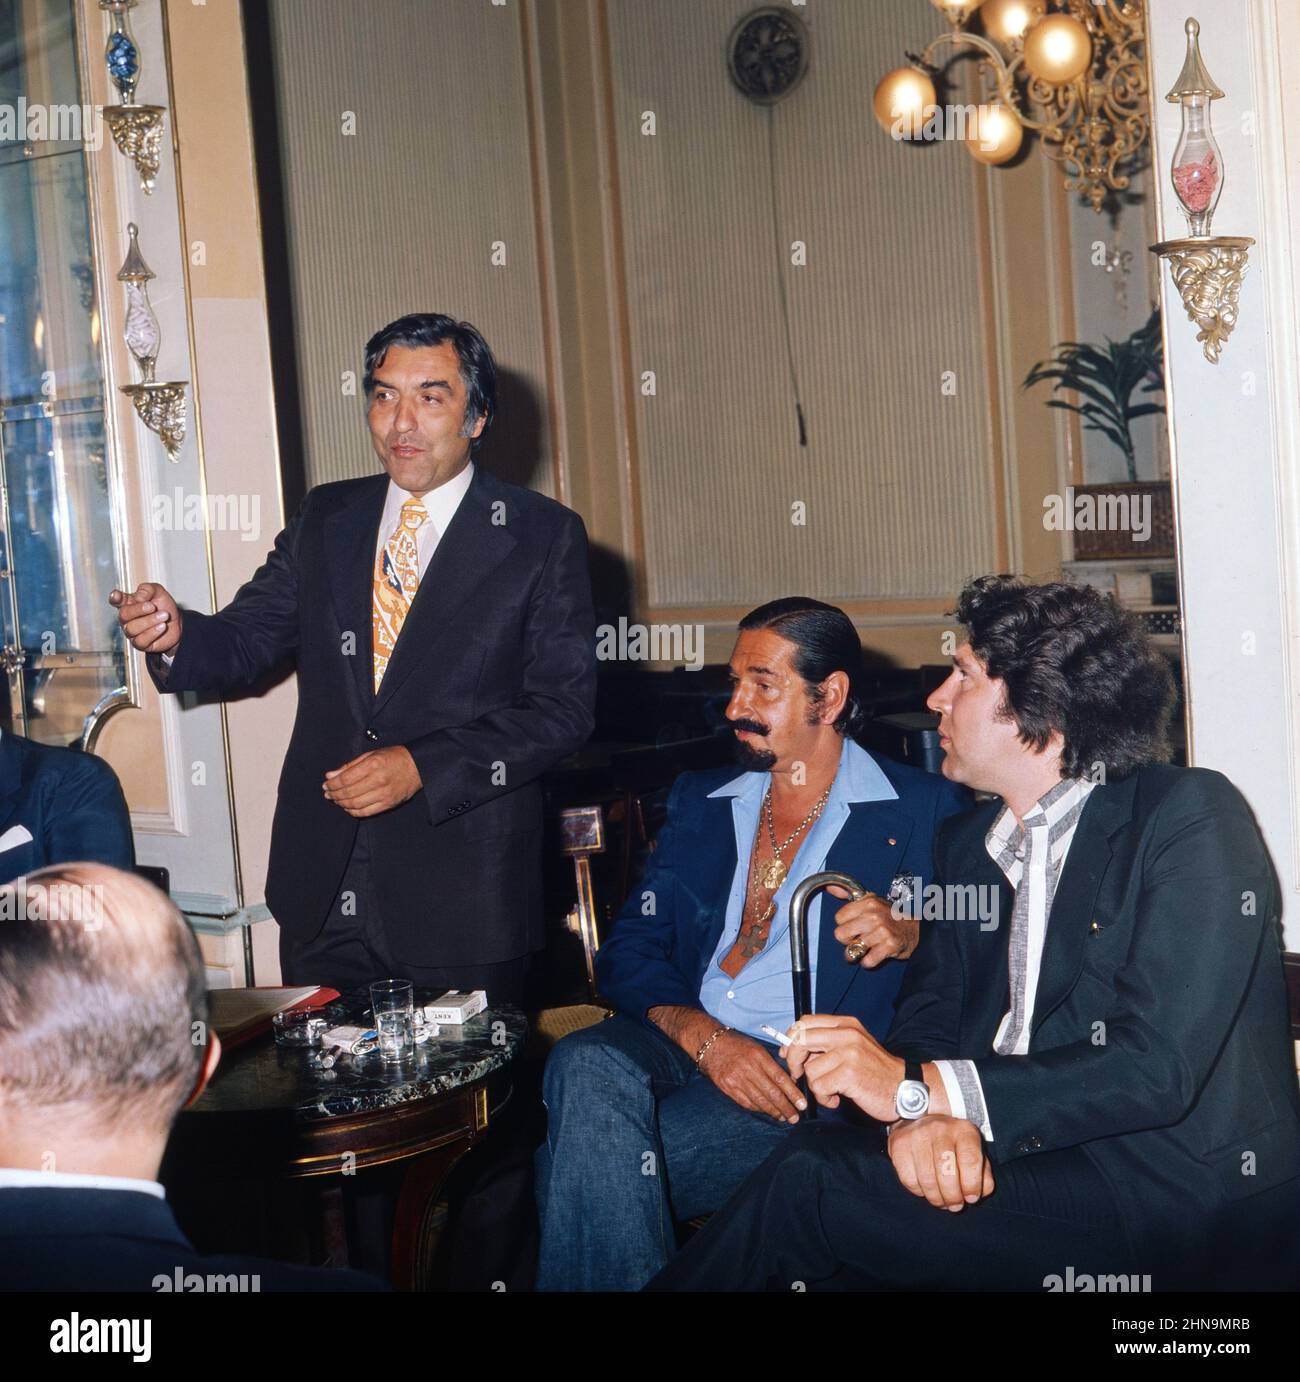 Jaime de Mora y Aragon, spanischer Schauspieler und Lebemann, zwischen Helmut Zilk (links) und Regisseur Peter Patzak bei einer Abendveranstaltung in Österreich, um 1974. Stock Photo